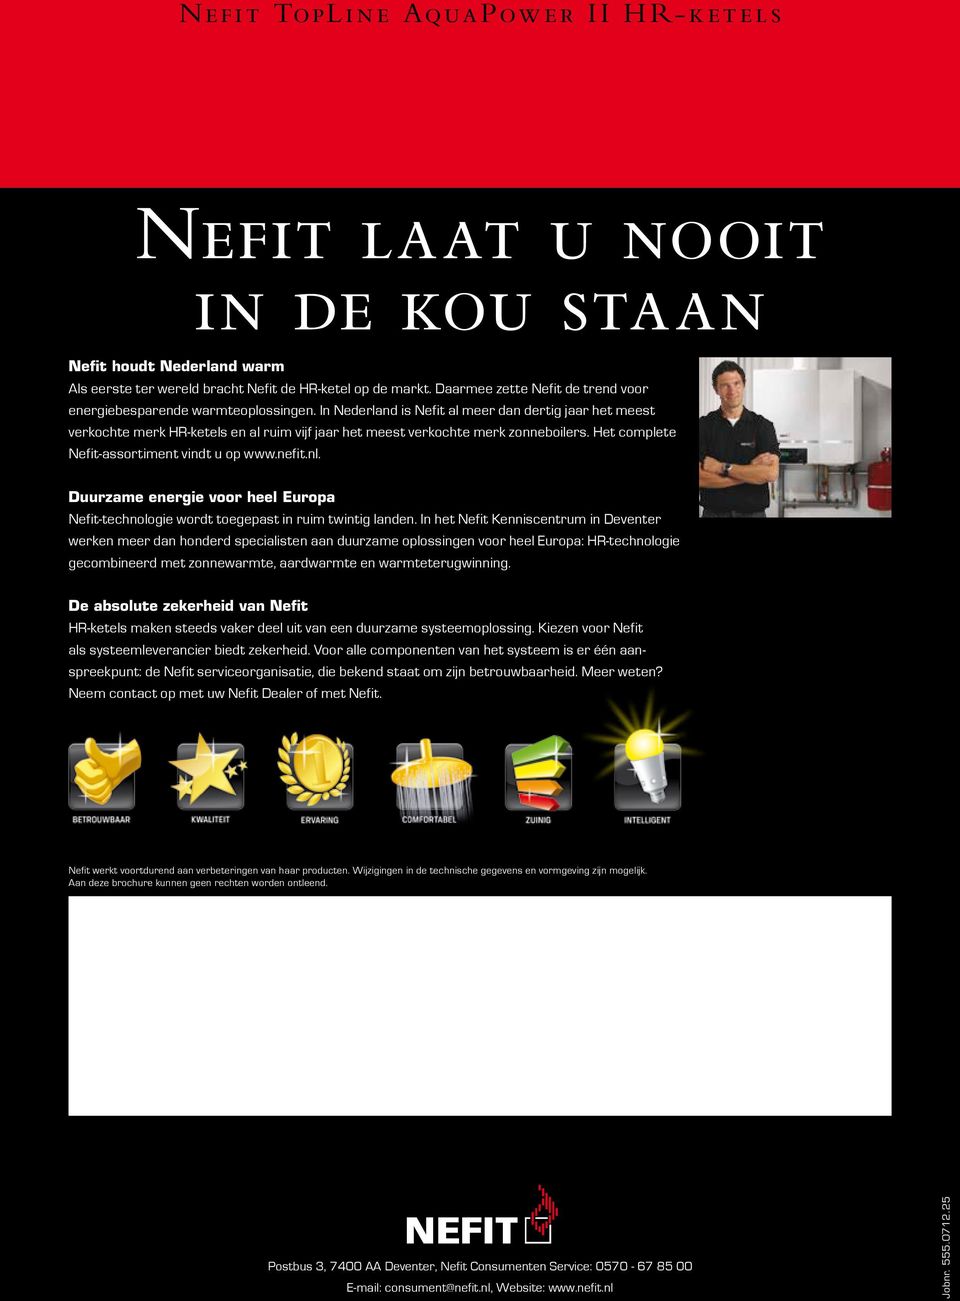 In Nederland is Nefit al meer dan dertig jaar het meest verkochte merk HR-ketels en al ruim vijf jaar het meest verkochte merk zonneboilers. Het complete Nefit-assortiment vindt u op www.nefit.nl.